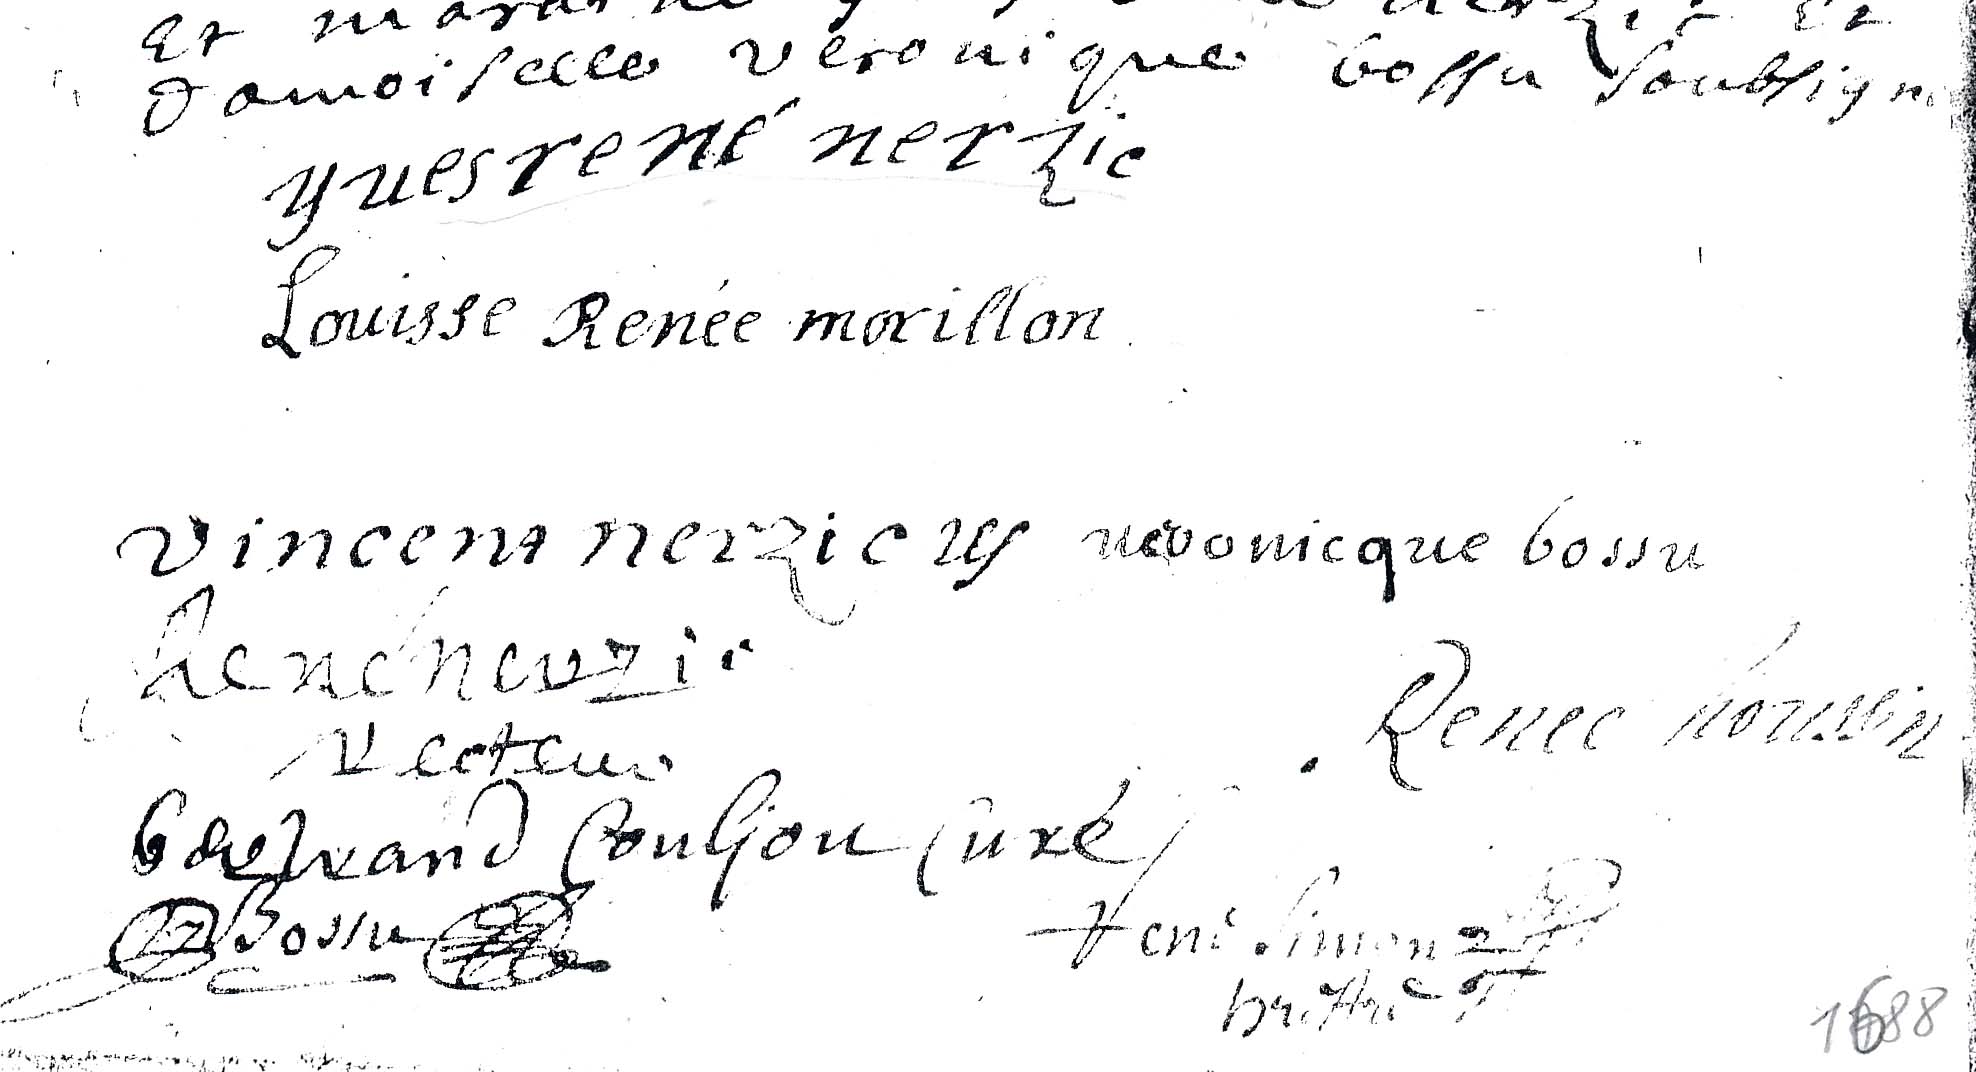 Signatures de Vincent Nerzic et Louise Rene Morillon